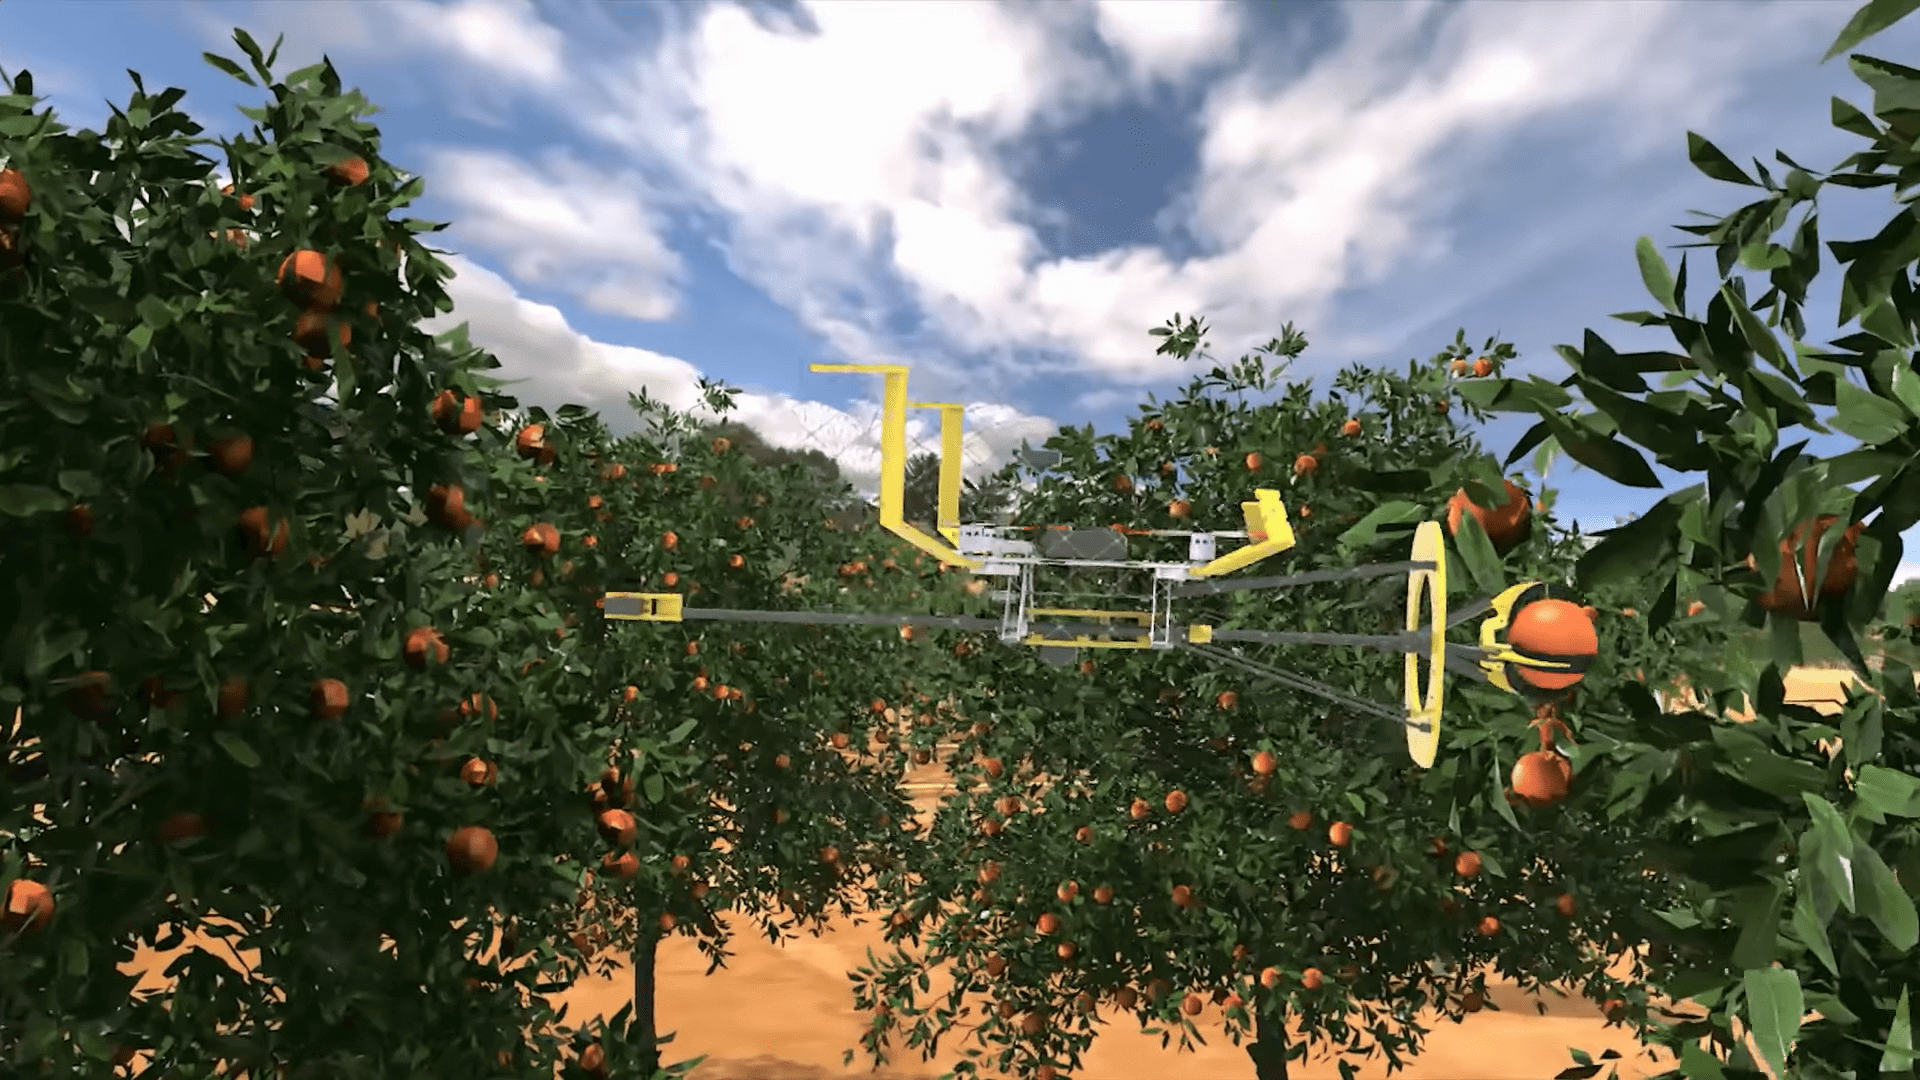 Meyve toplayan robot